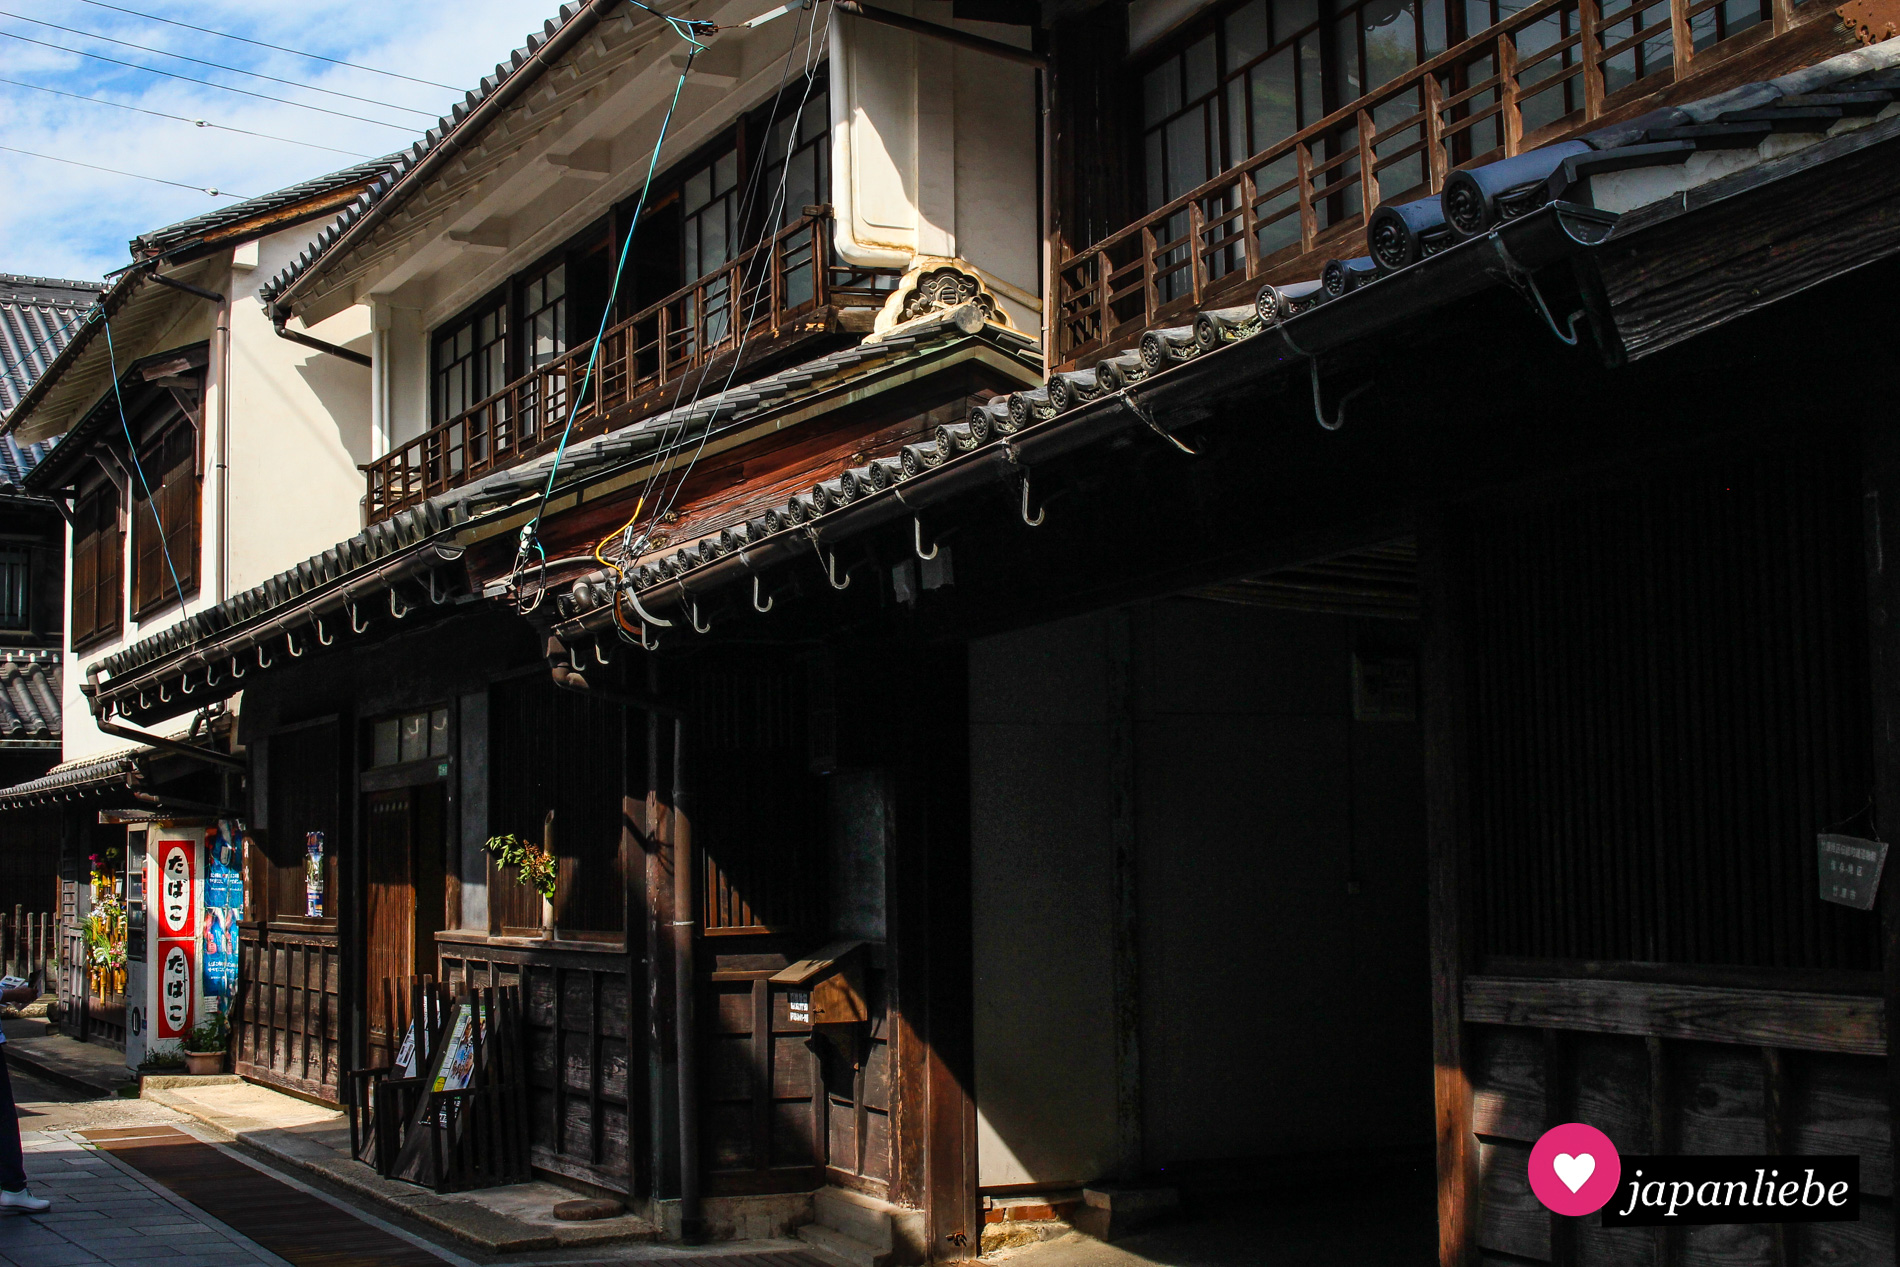 Die Altstadt von Takehara mit ihren traditionellen Häusern ist wirklich bezaubernd.